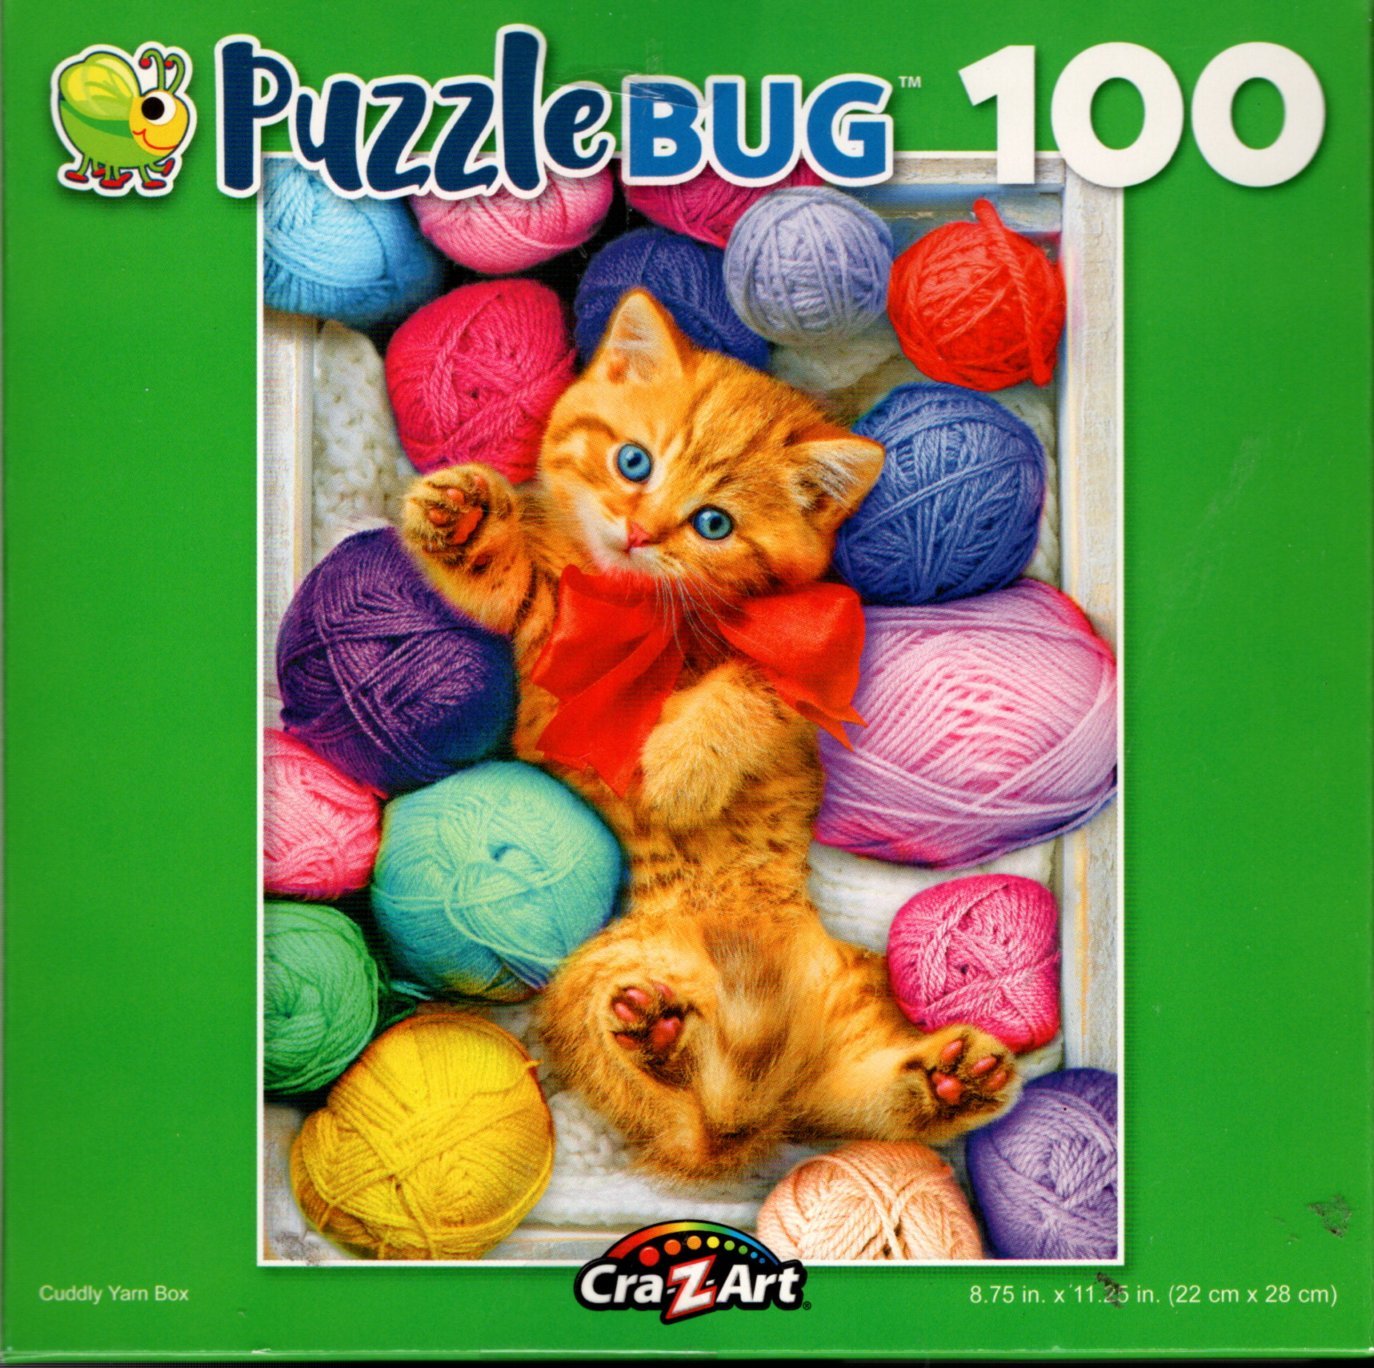 Cuddly Yarn Box - 100 Piece Jigsaw Puzzle